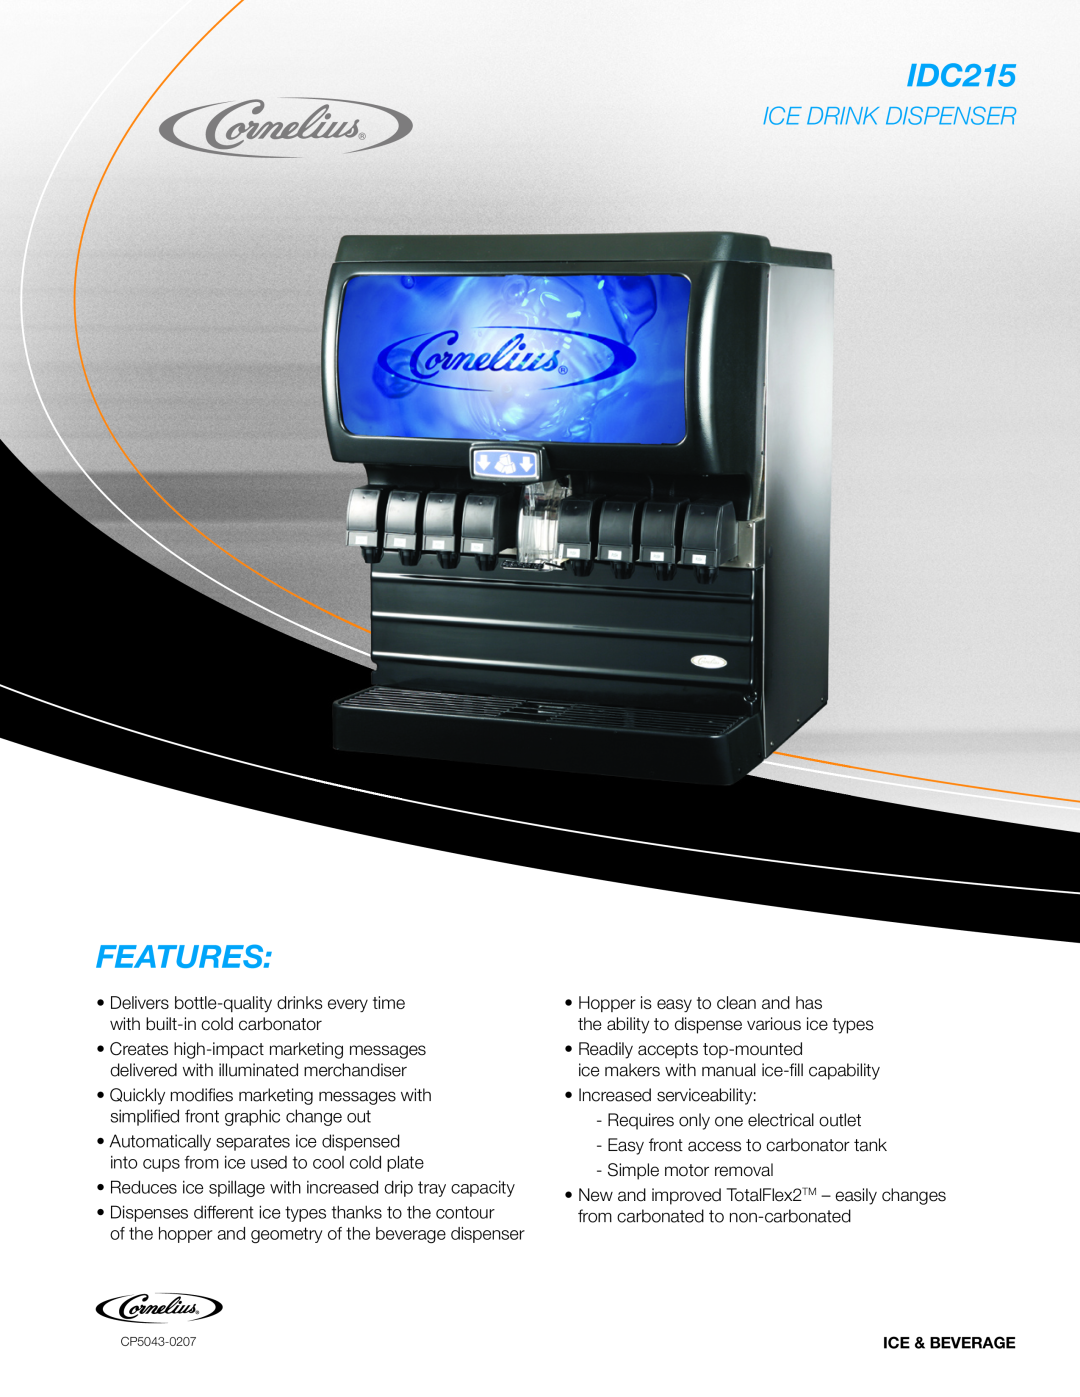 Cornelius IDC215 manual Features, Ice Drink Dispenser 